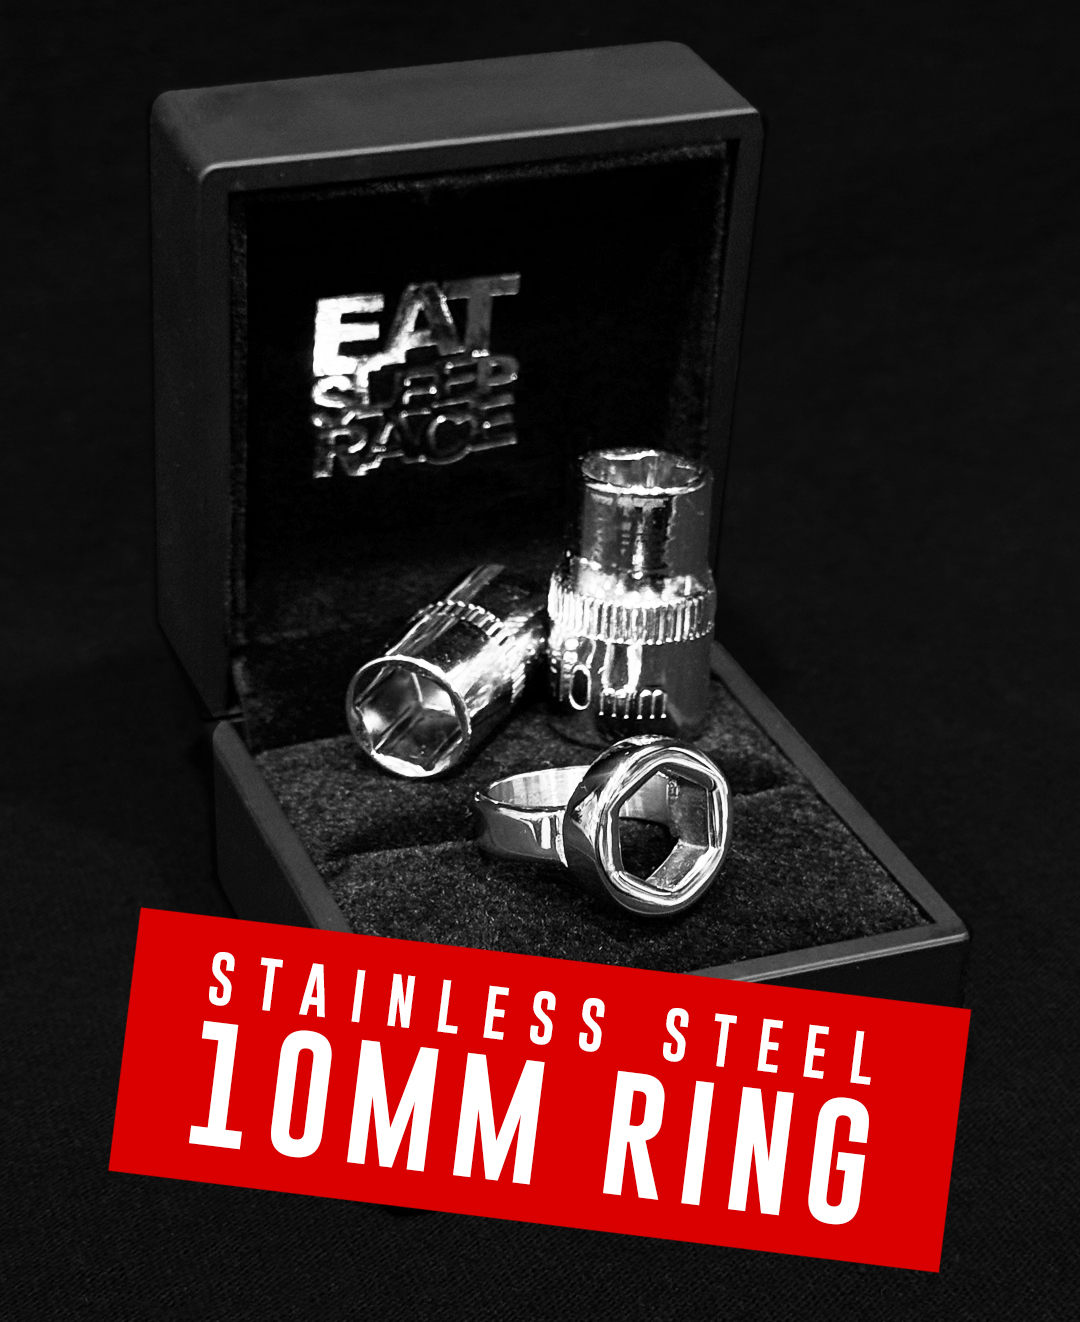 10mm ring